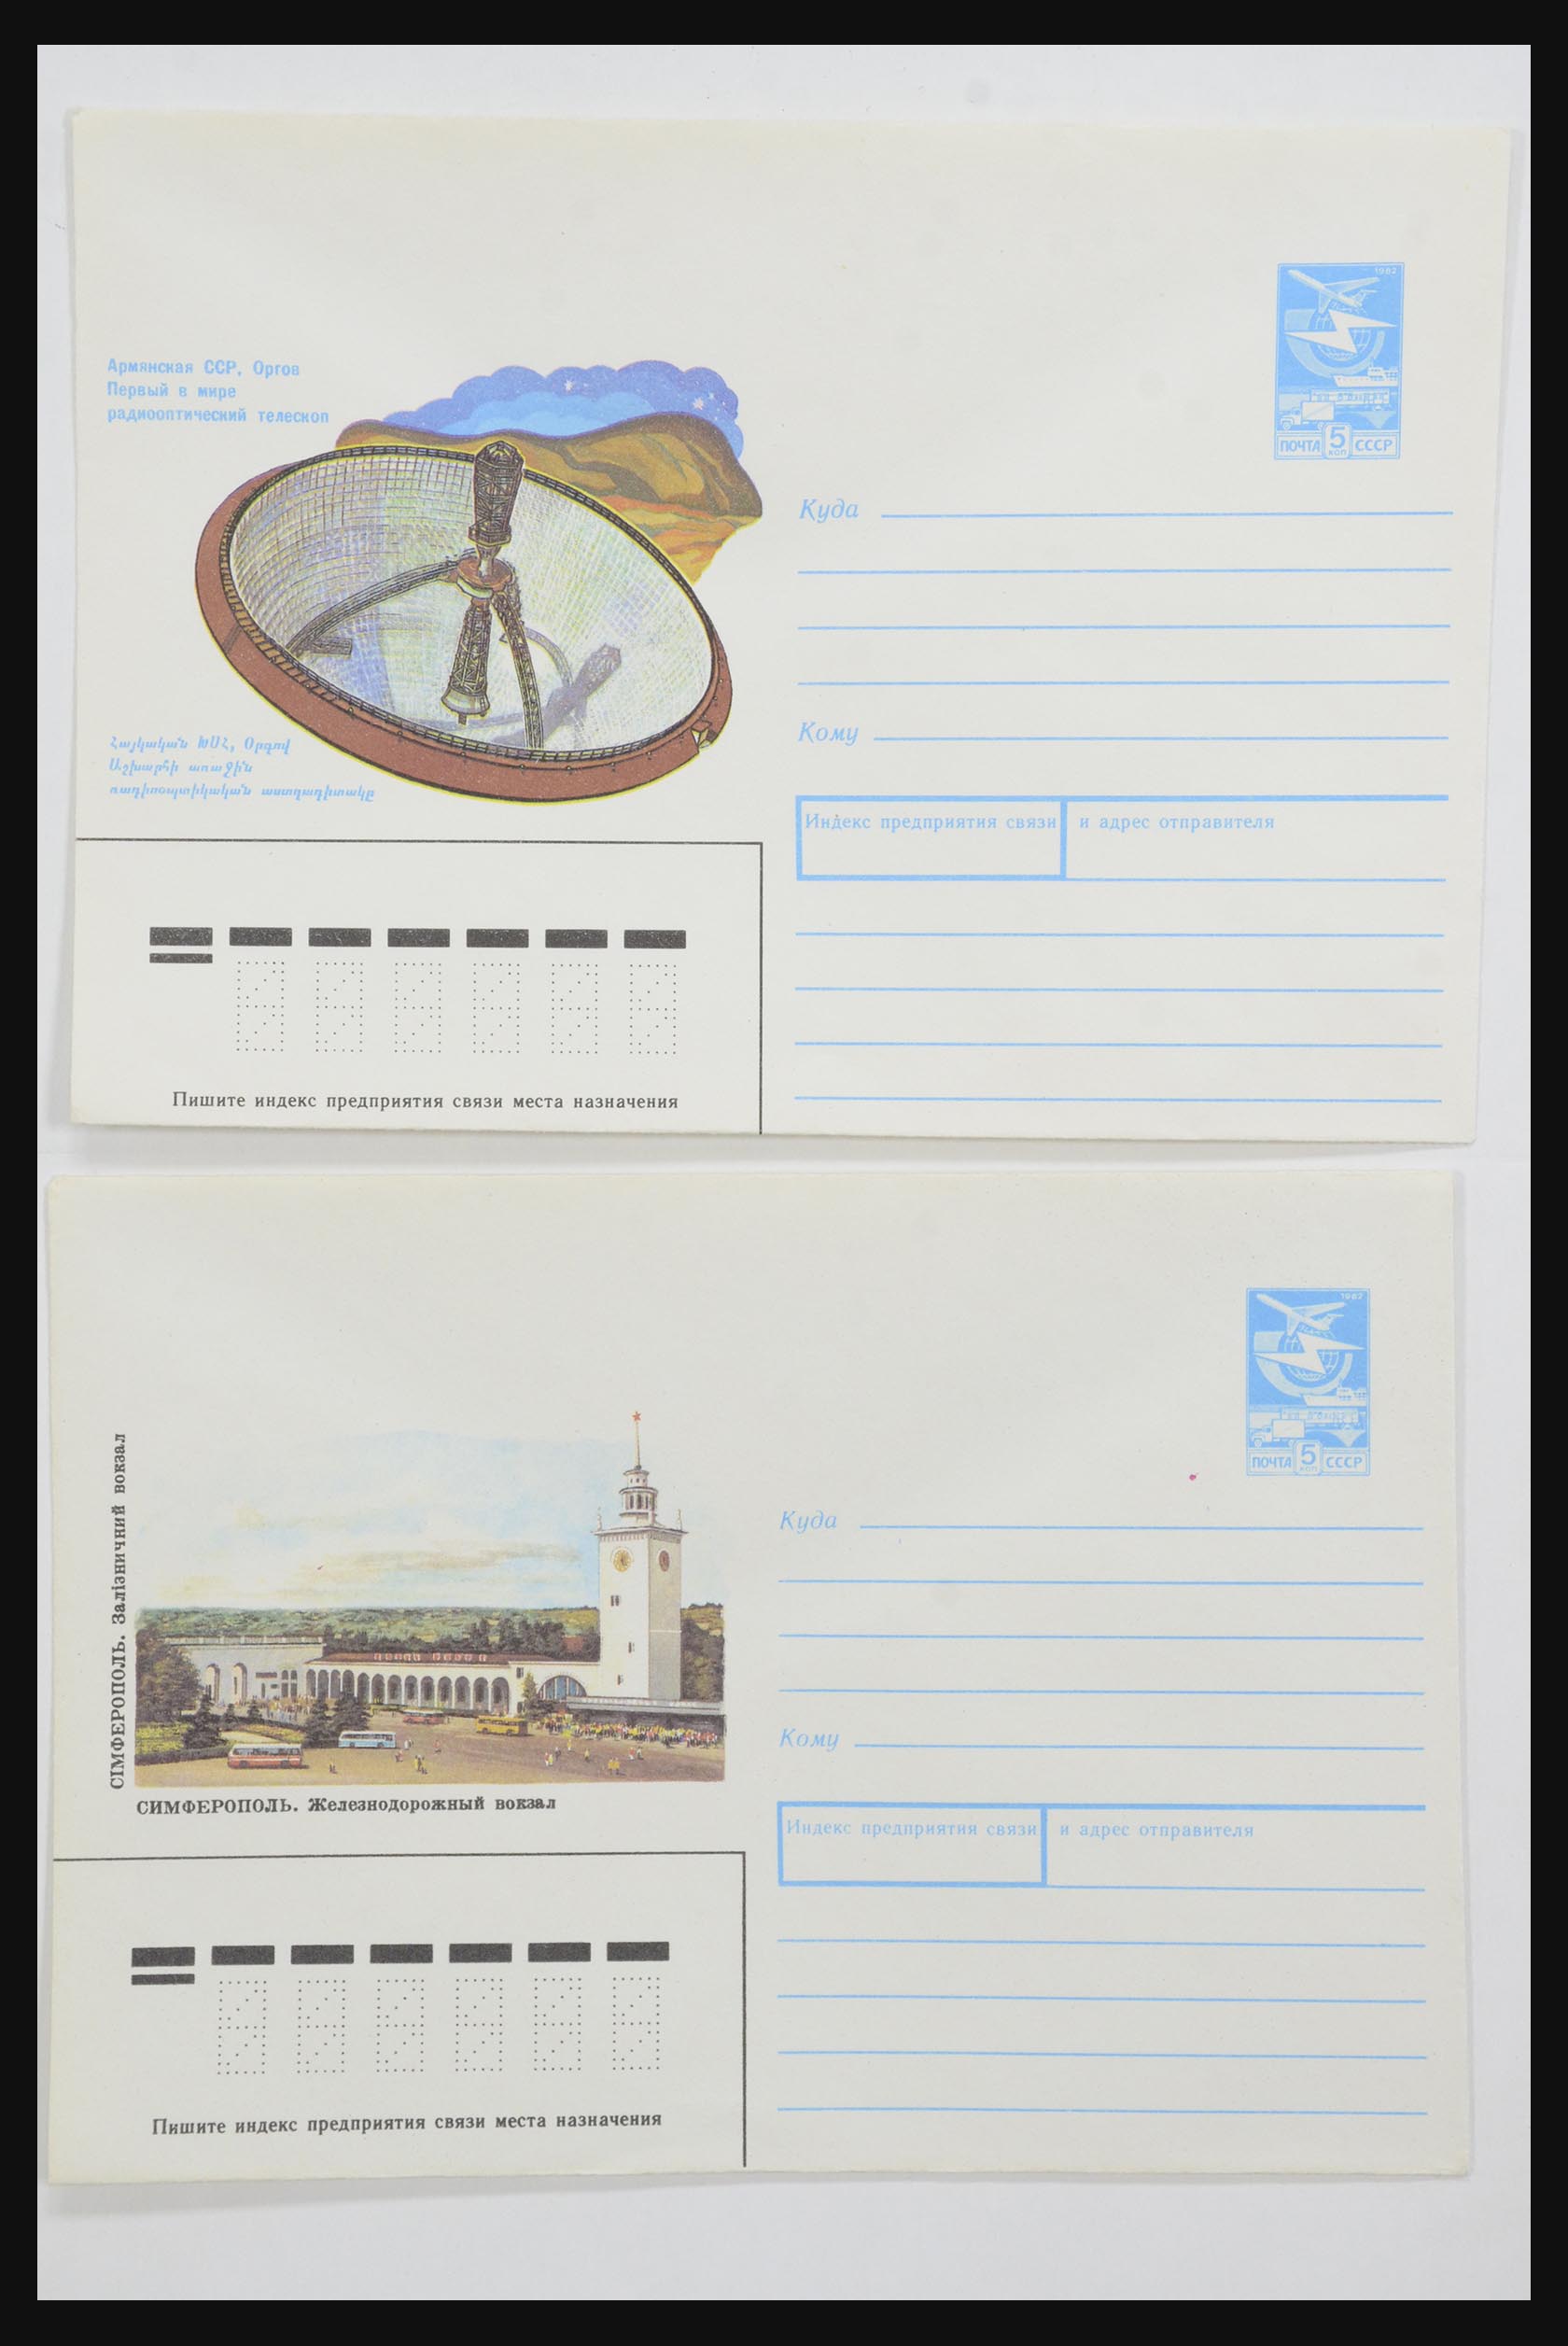 31928 0045 - 31928 Oost Europa brieven jaren 60/90.